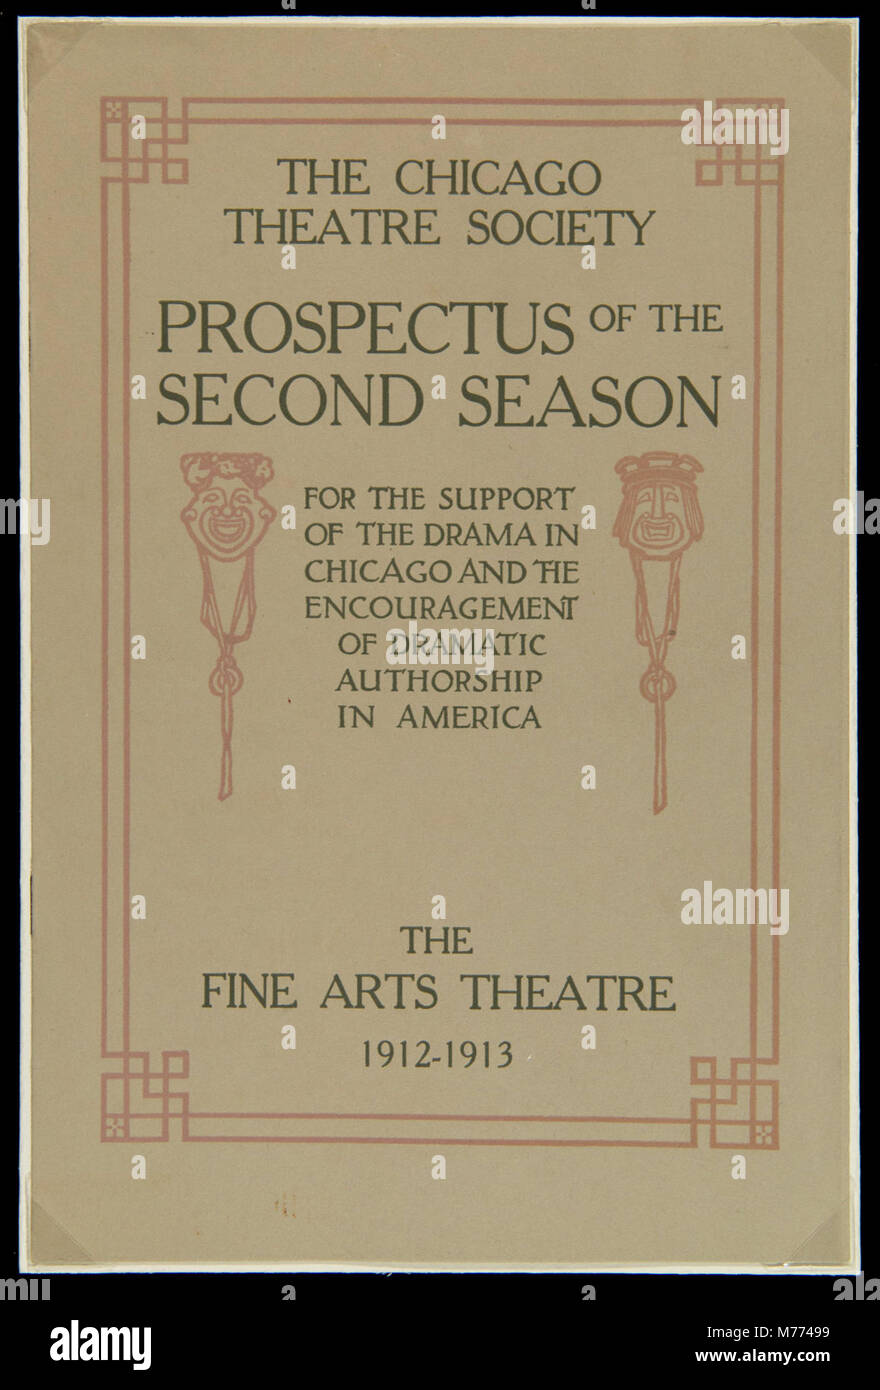 Le Chicago Theatre Society, du prospectus de la deuxième saison, 1912-1913 (NEN 5499) Banque D'Images